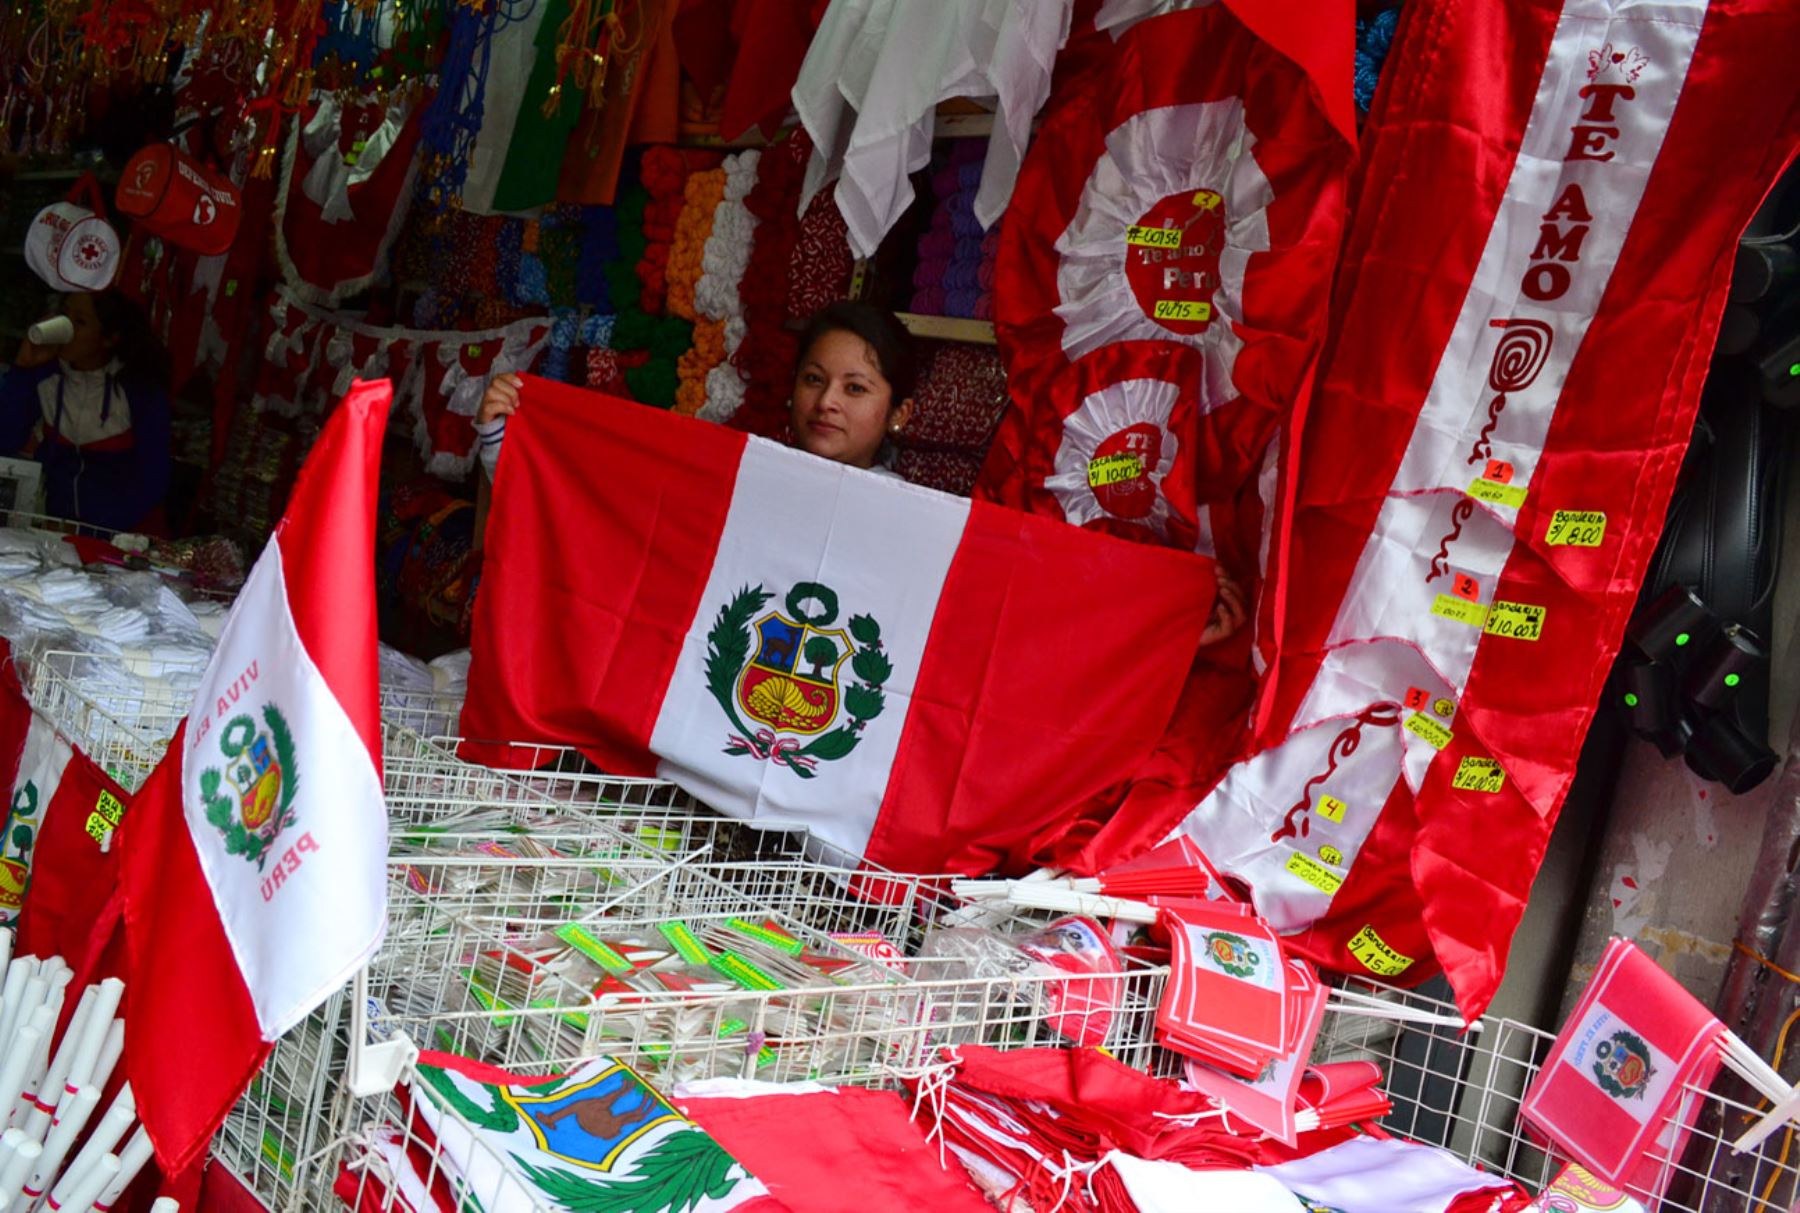 Bandera del Perú.